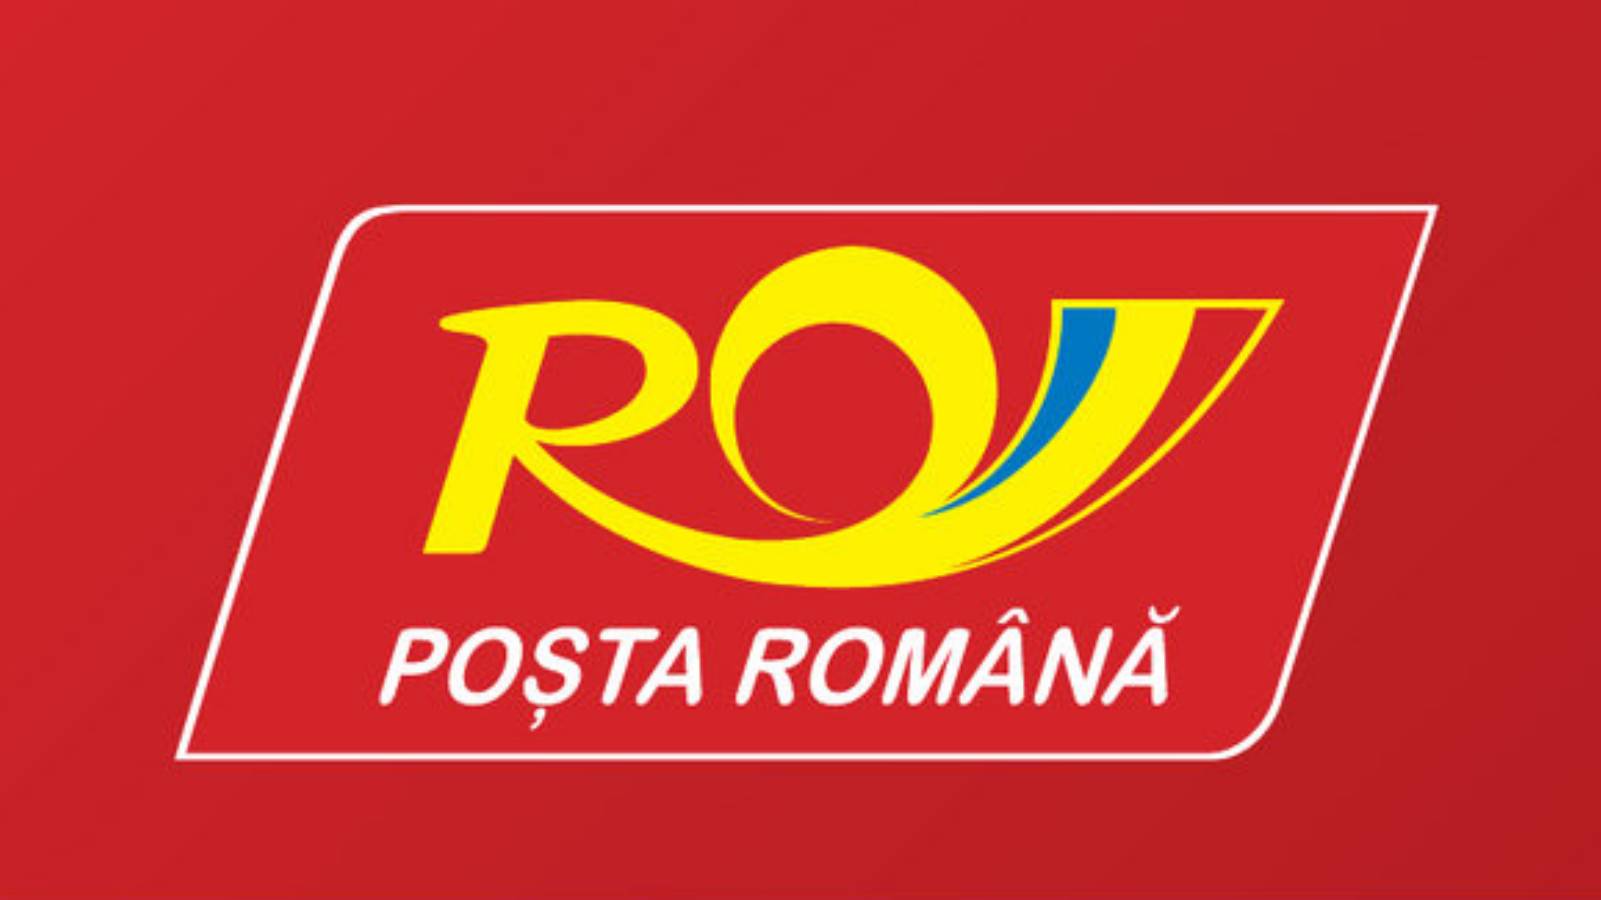 Poste roumaine Le message surprenant que les Roumains ne connaissaient pas